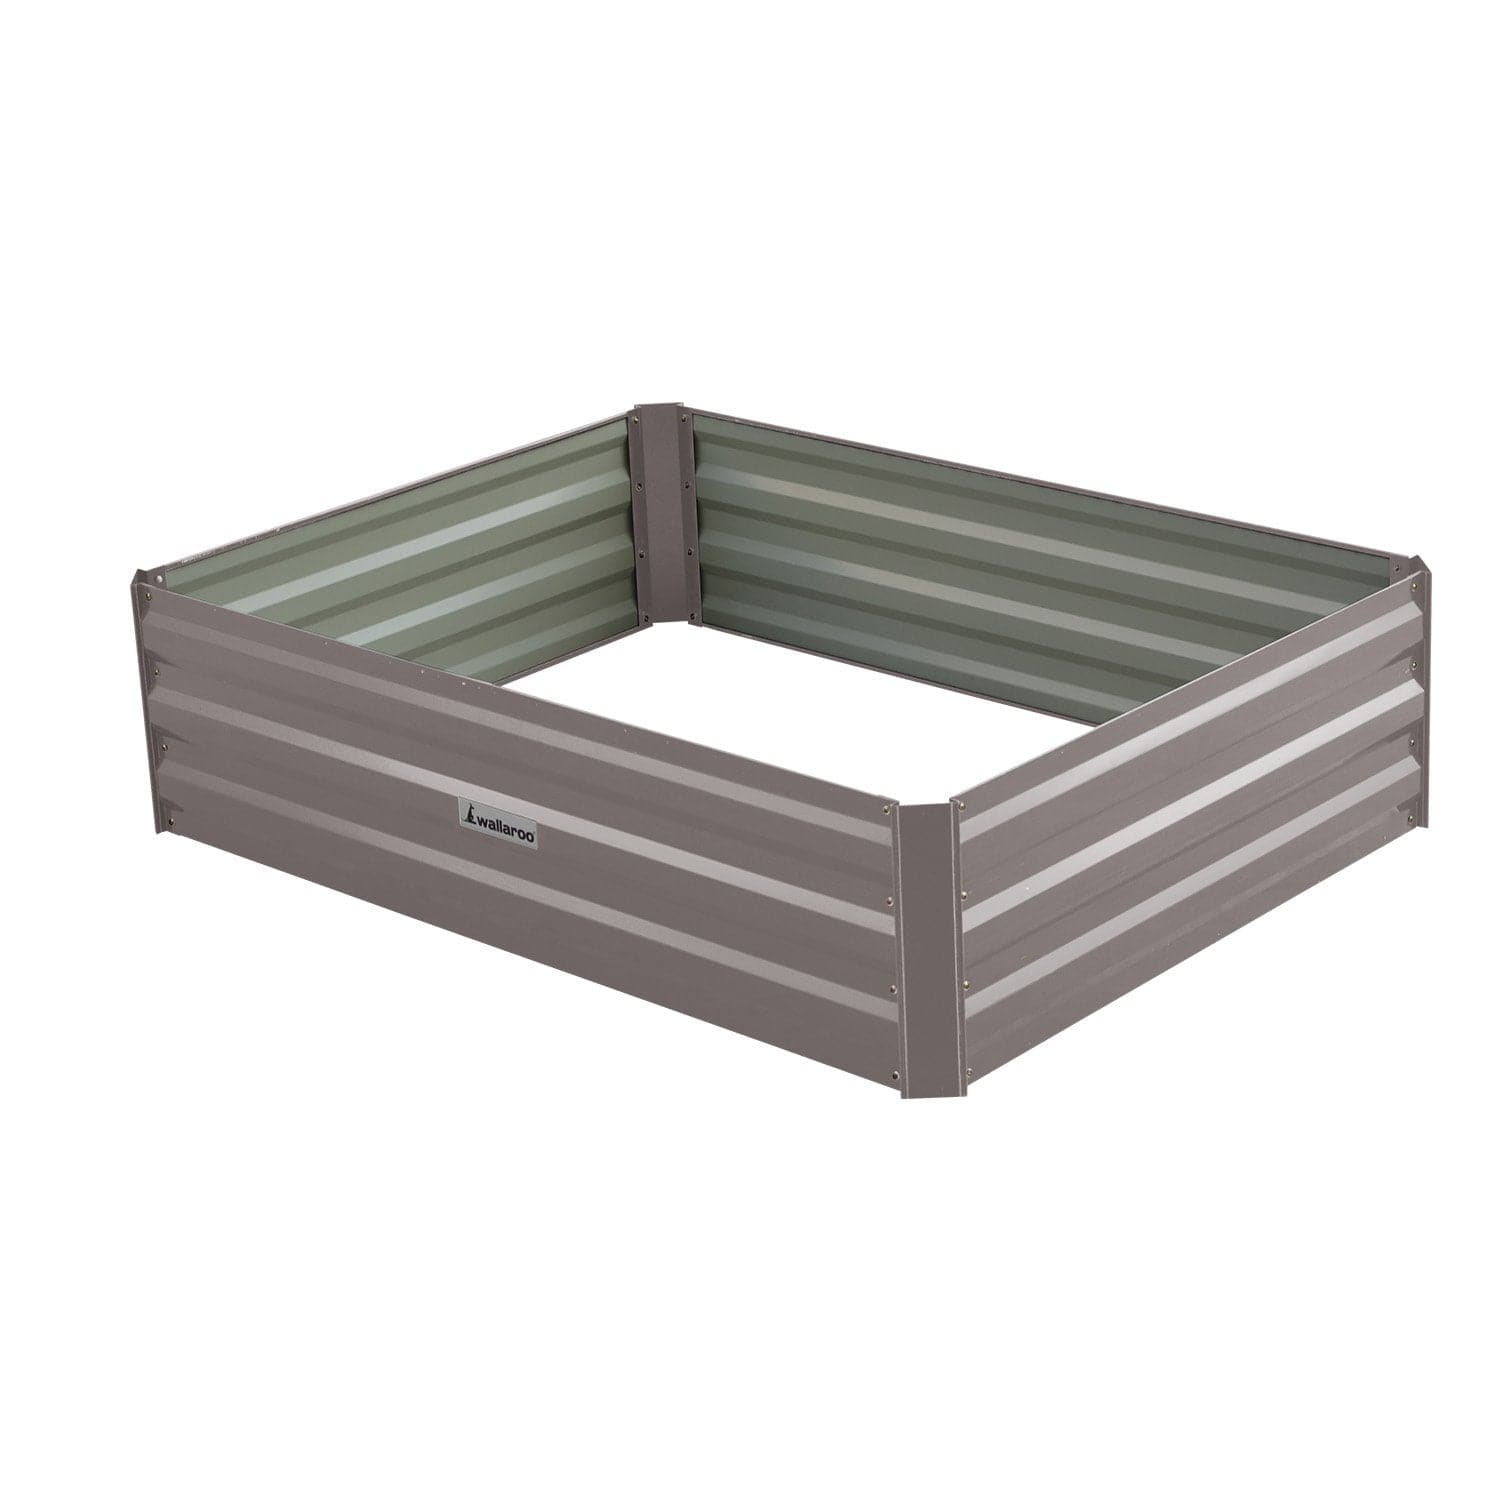 Garden Bed 120 x 90 x 30cm Galvanized Steel - Grey